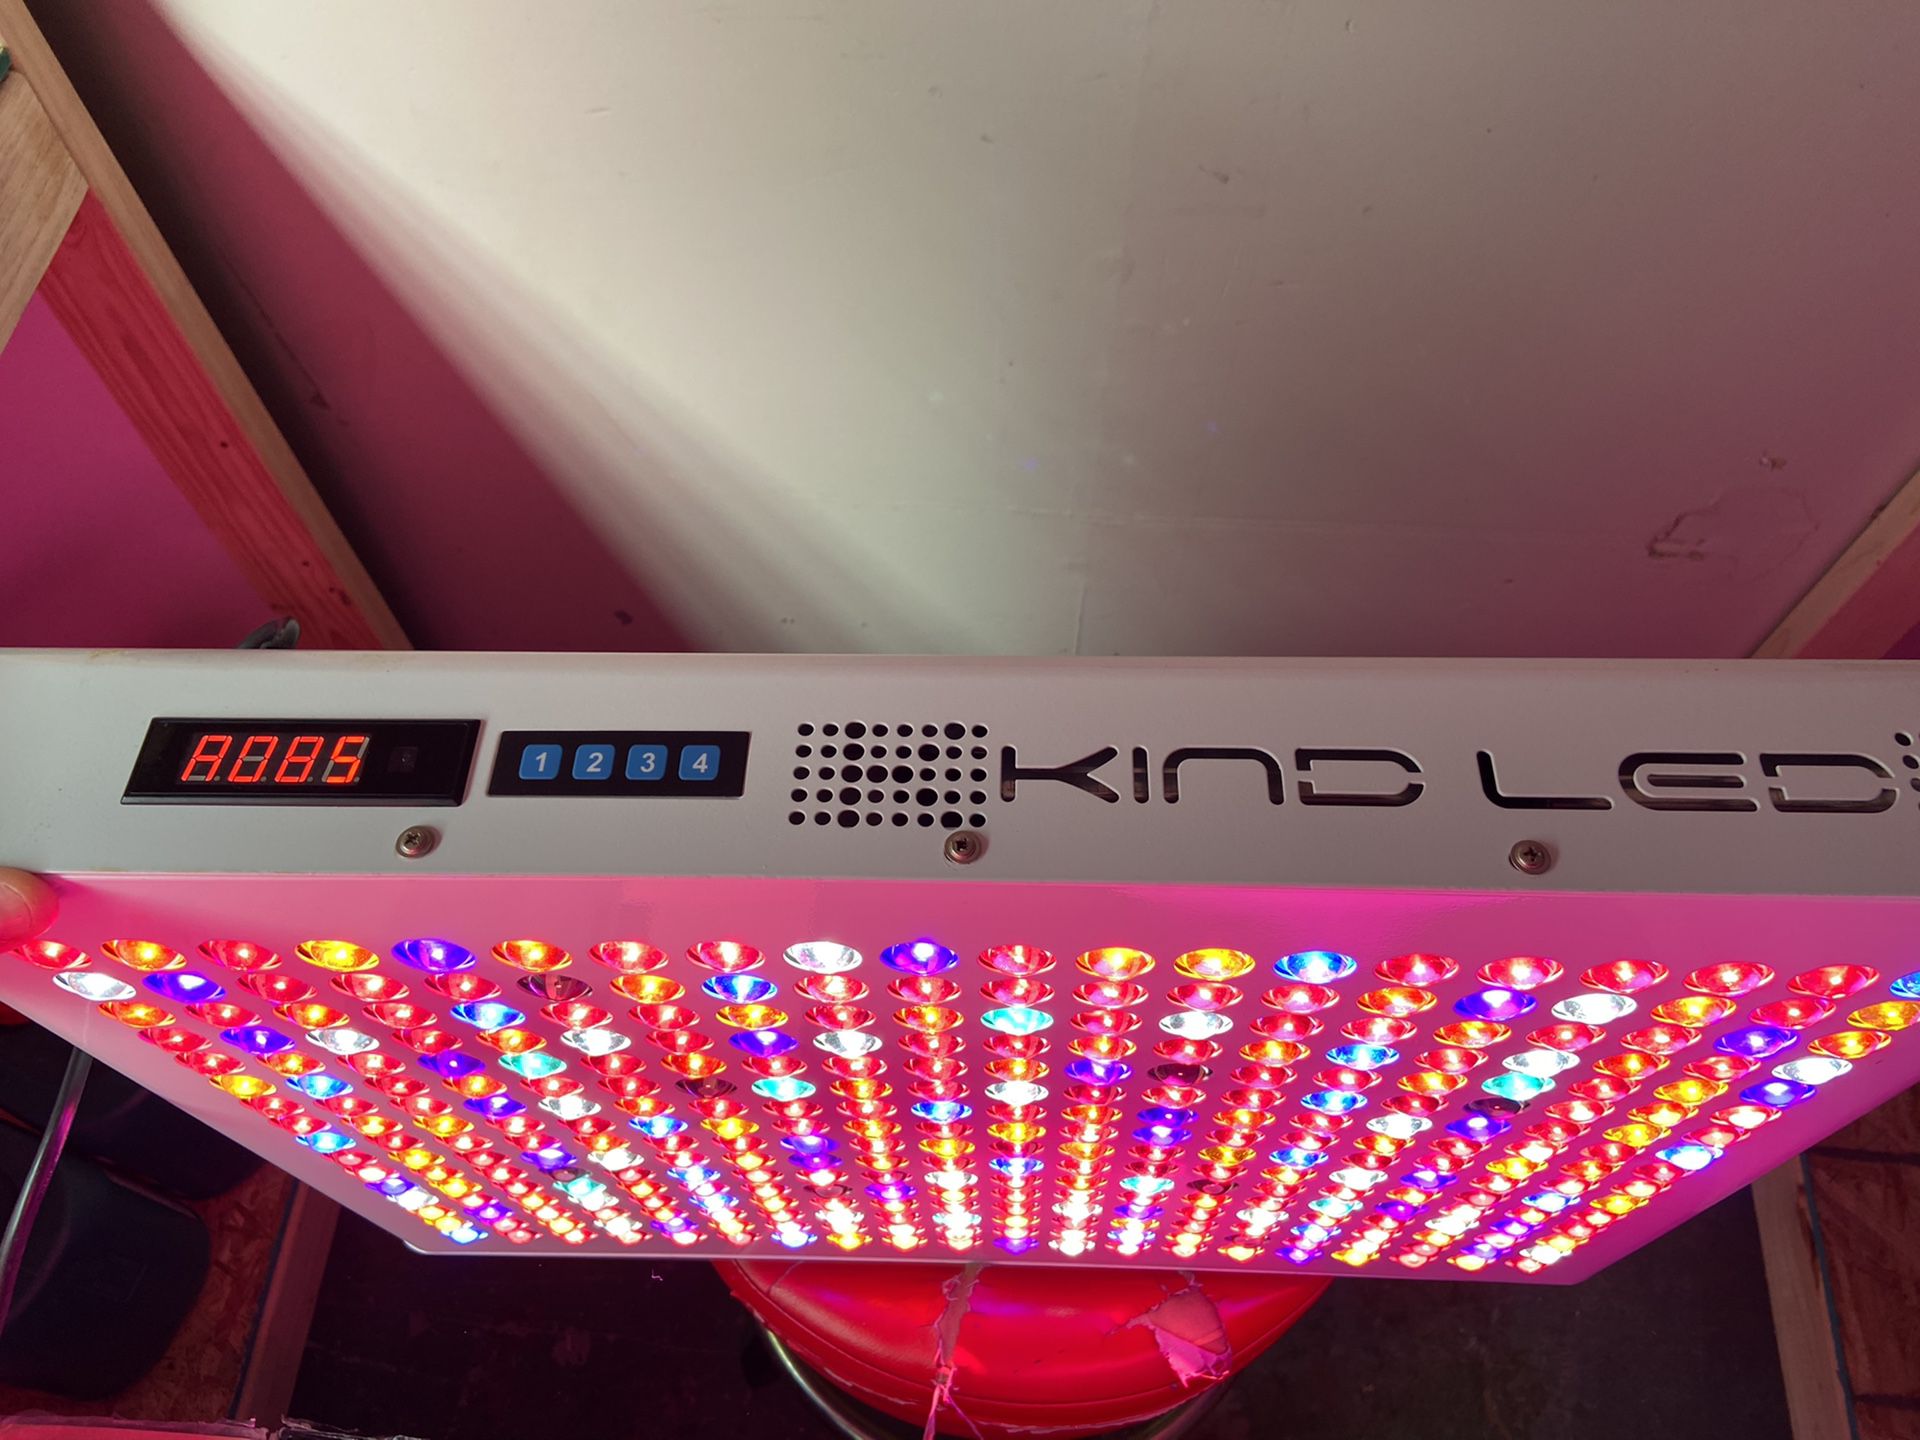 Kind Led XL 1000 for sale!!! See details! $600 obo